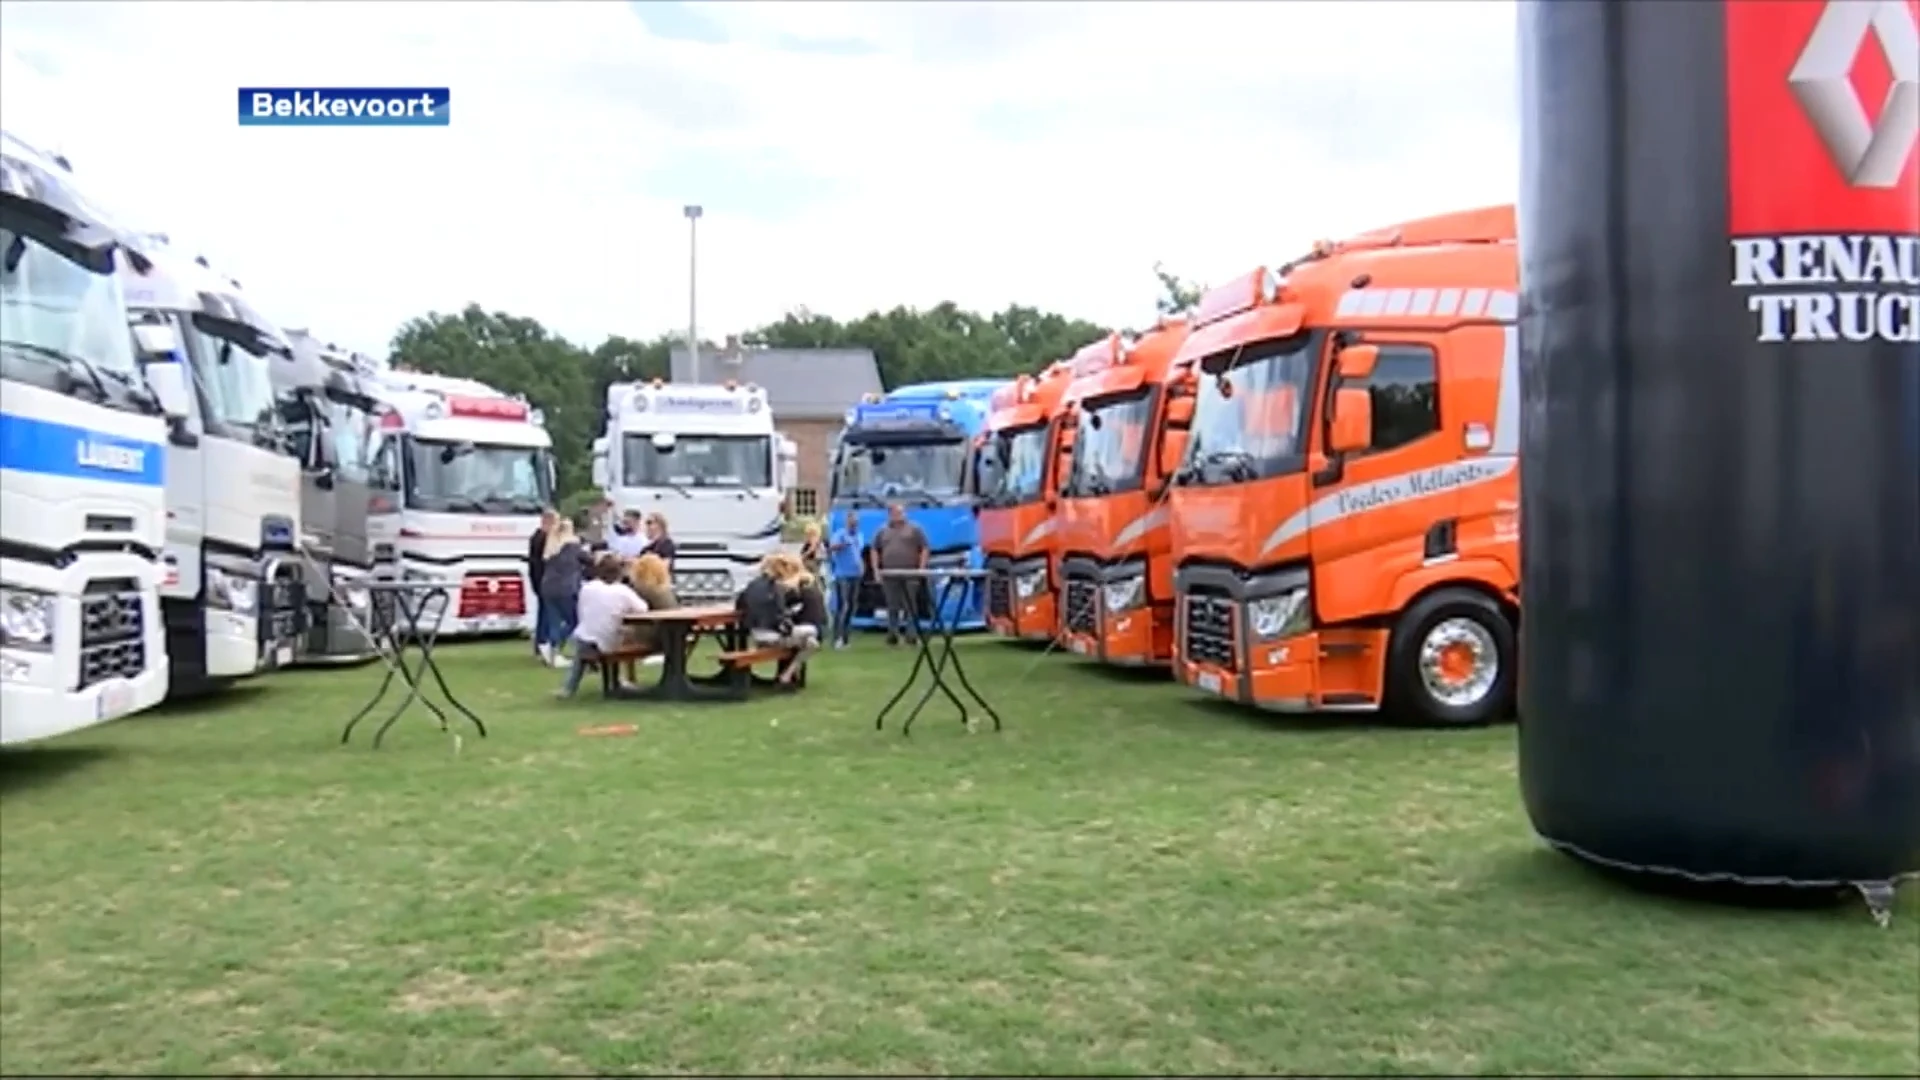 Grote truckshow in Bekkevoort wordt opnieuw met een jaar uitgesteld